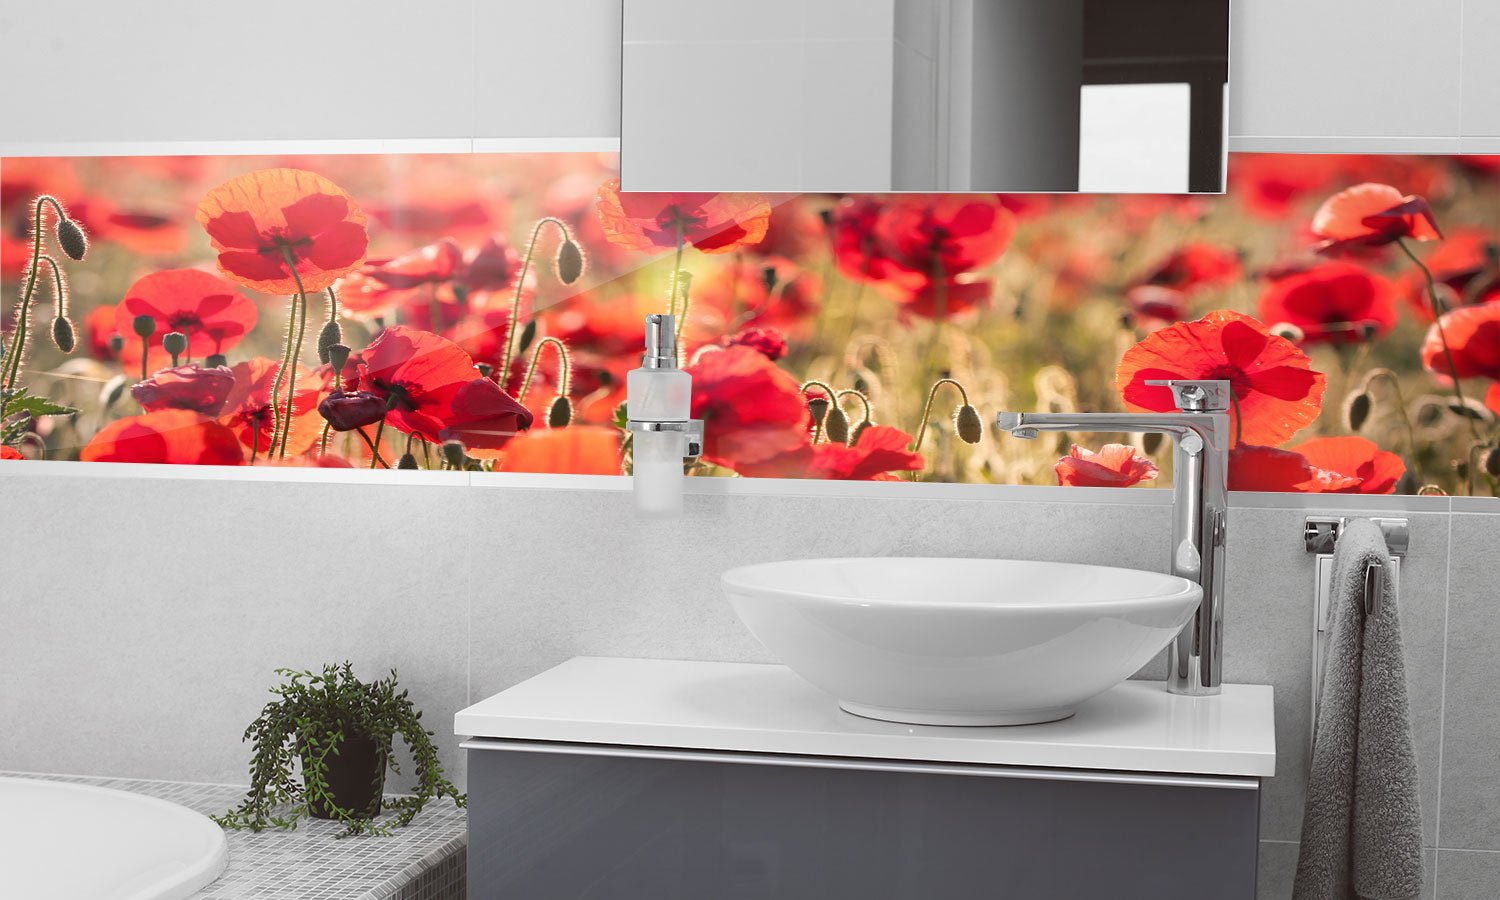 Kuhinjski paneli Tuscan red poppies - Pleksi steklo - s tiskom za kuhinjo, Stenske obloge PKU0299